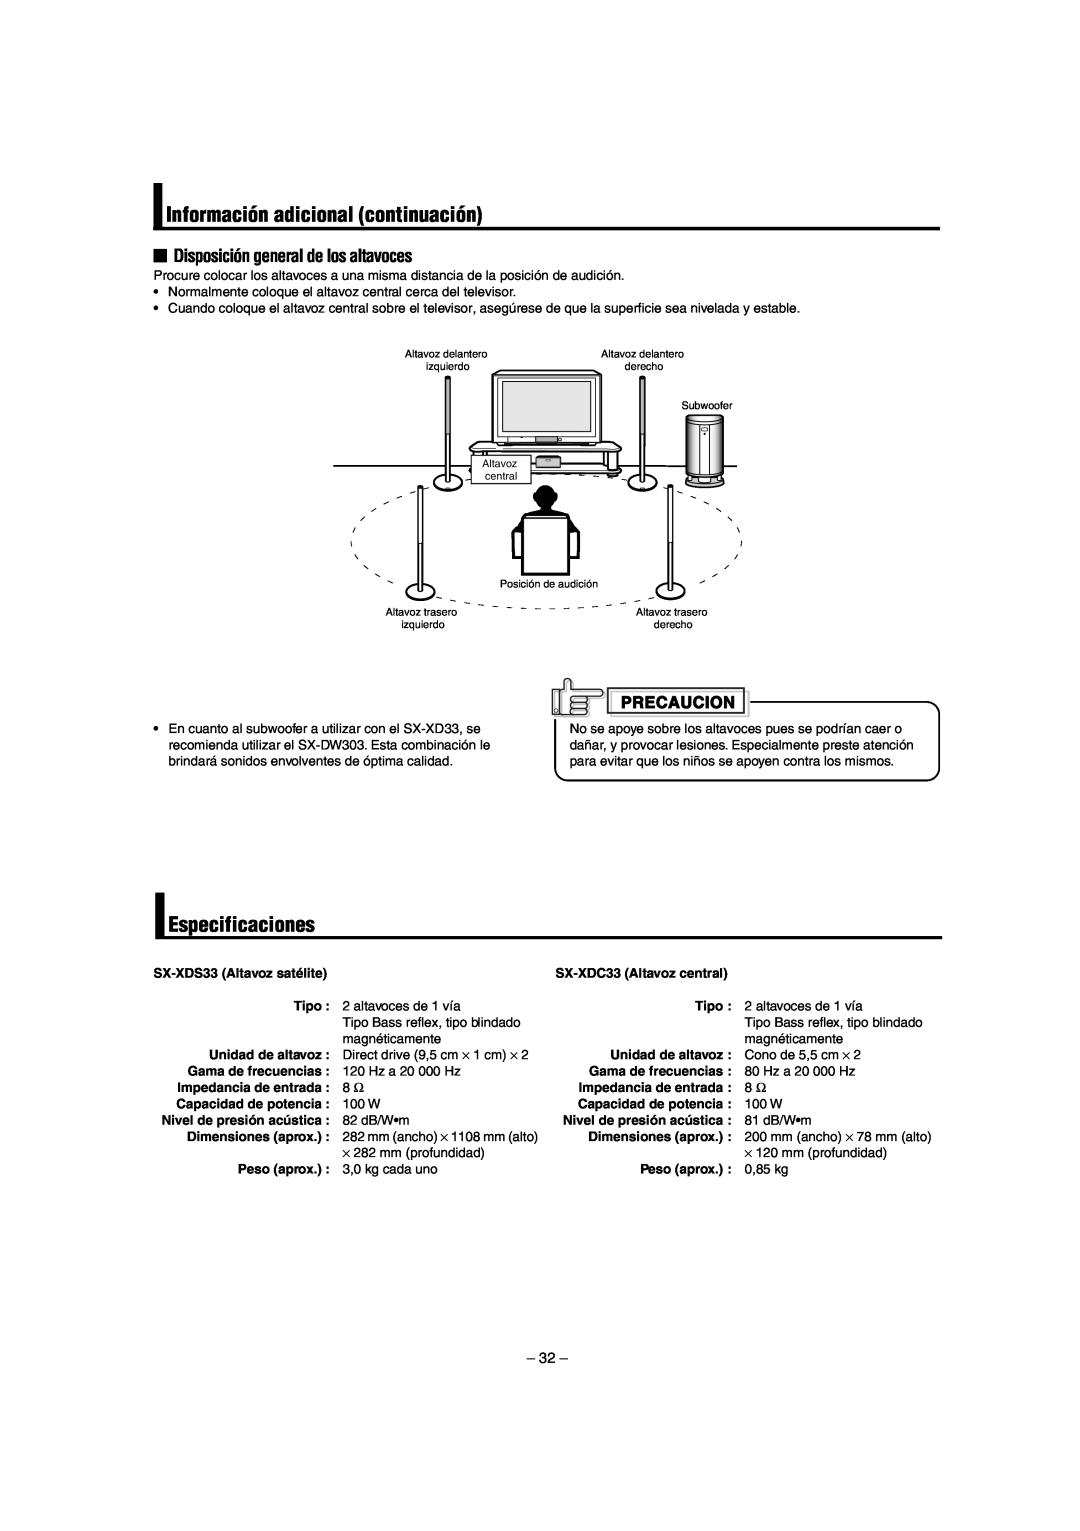 JVC LVT0953-001B manual Información adicional continuación, Especificaciones, Disposición general de los altavoces 